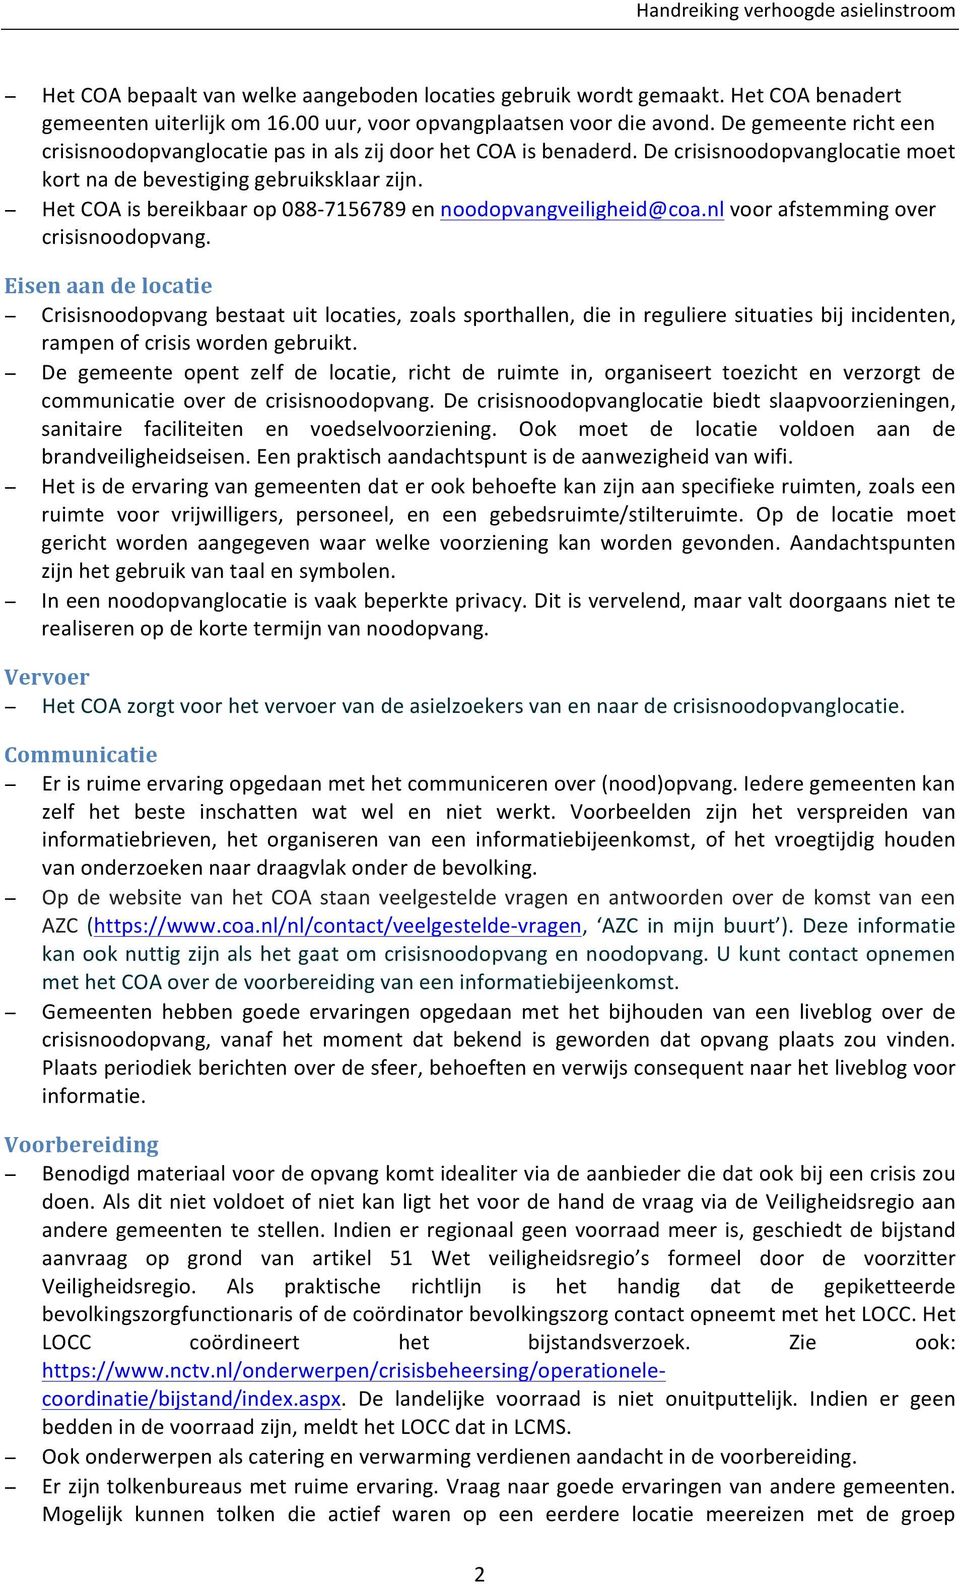 Het COA is bereikbaar op 088-7156789 en noodopvangveiligheid@coa.nl voor afstemming over crisisnoodopvang.